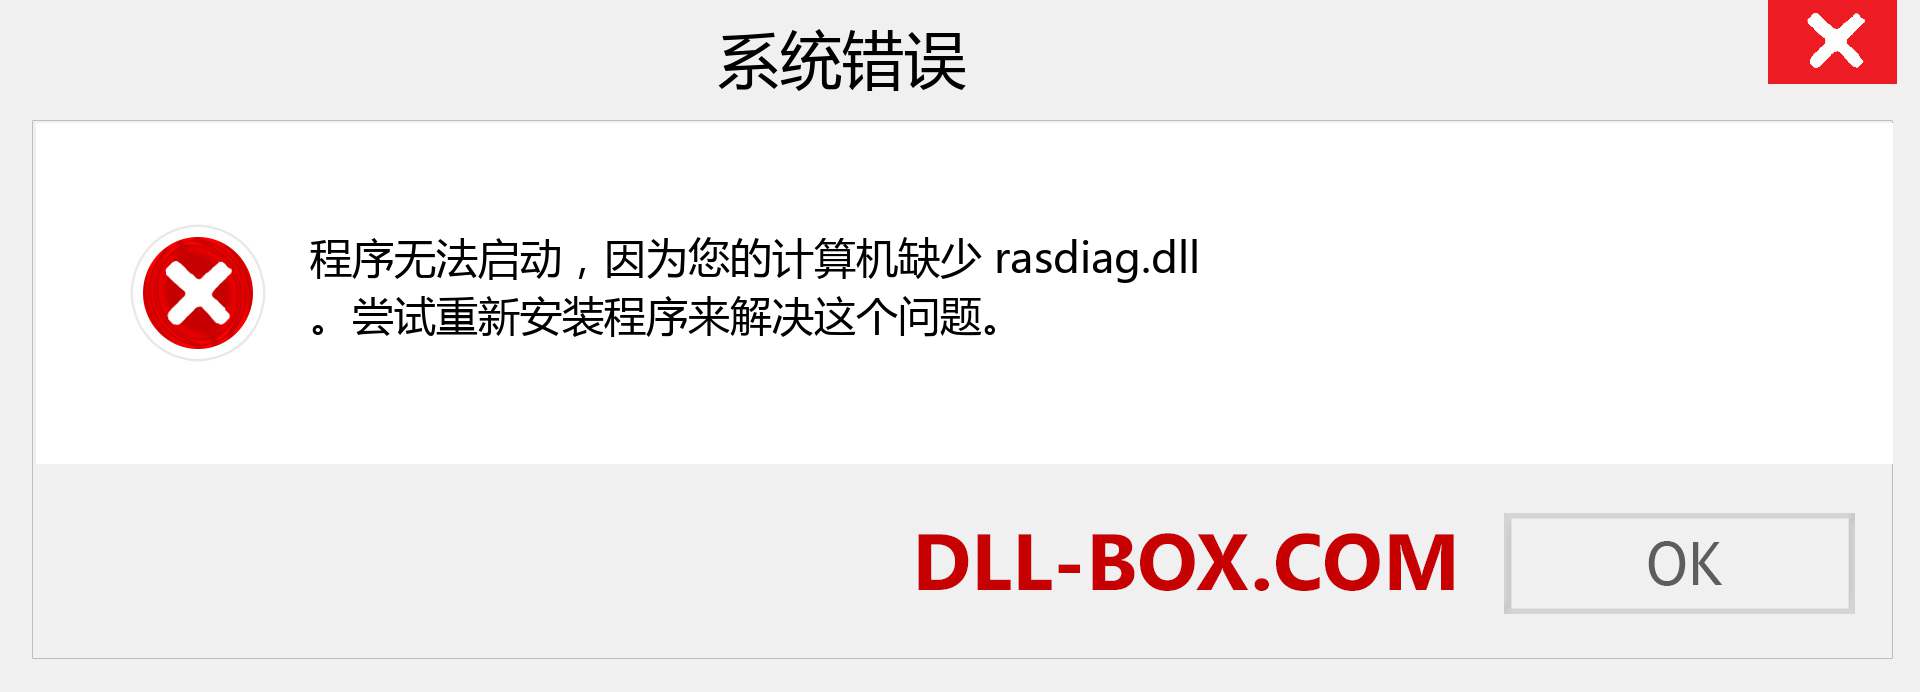 rasdiag.dll 文件丢失？。 适用于 Windows 7、8、10 的下载 - 修复 Windows、照片、图像上的 rasdiag dll 丢失错误